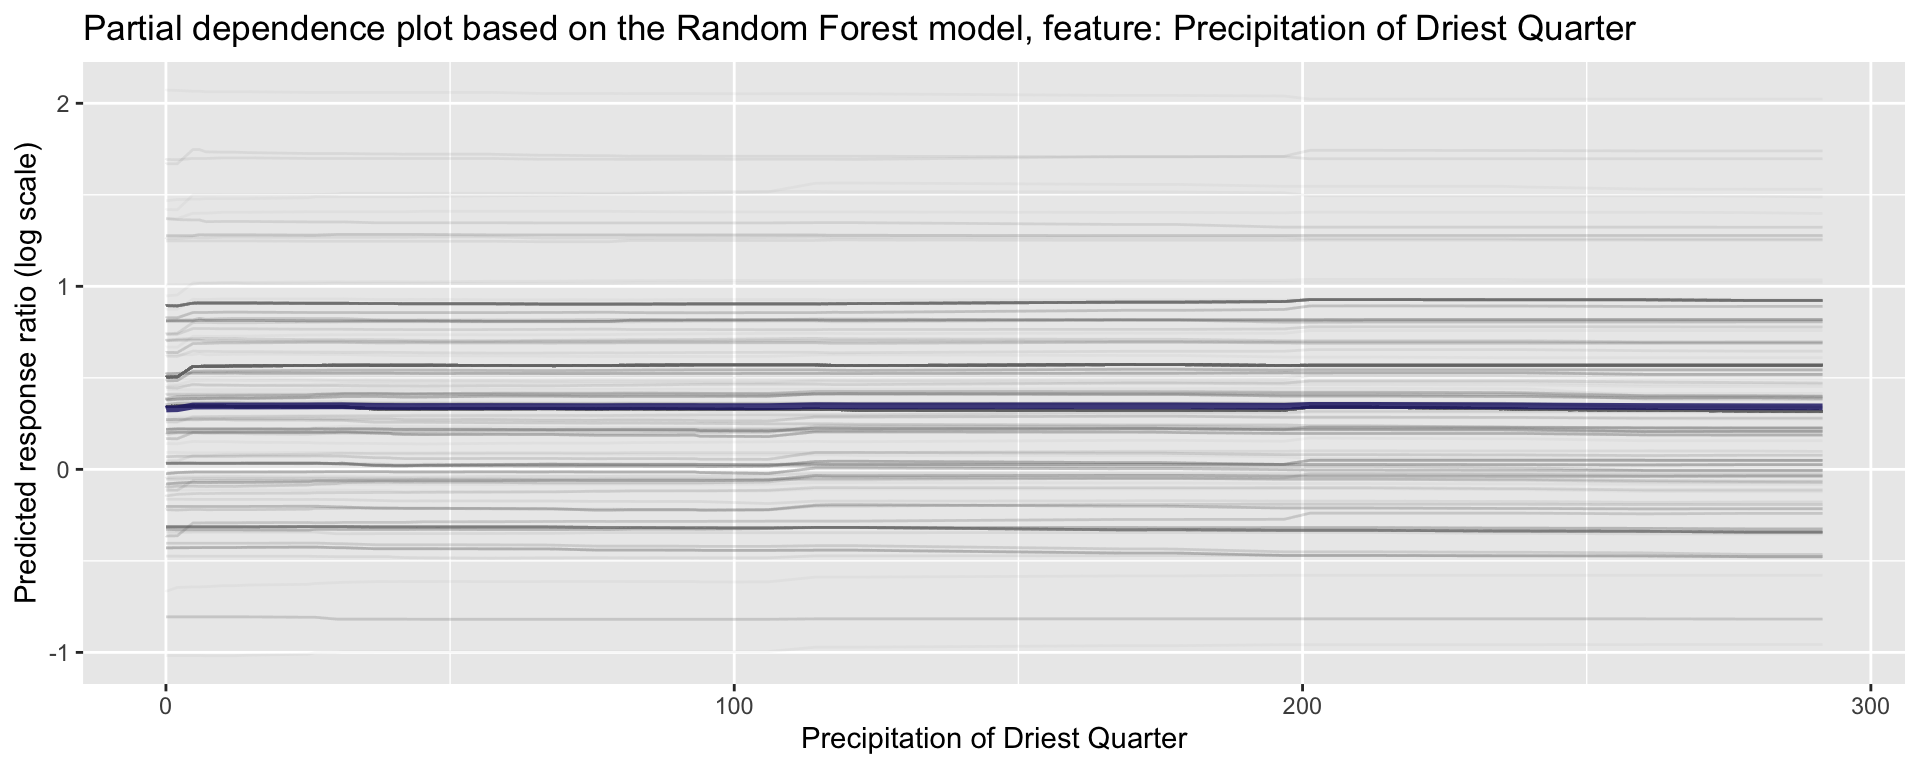 Partial dependence plot for Precipitation of Driest Quarter